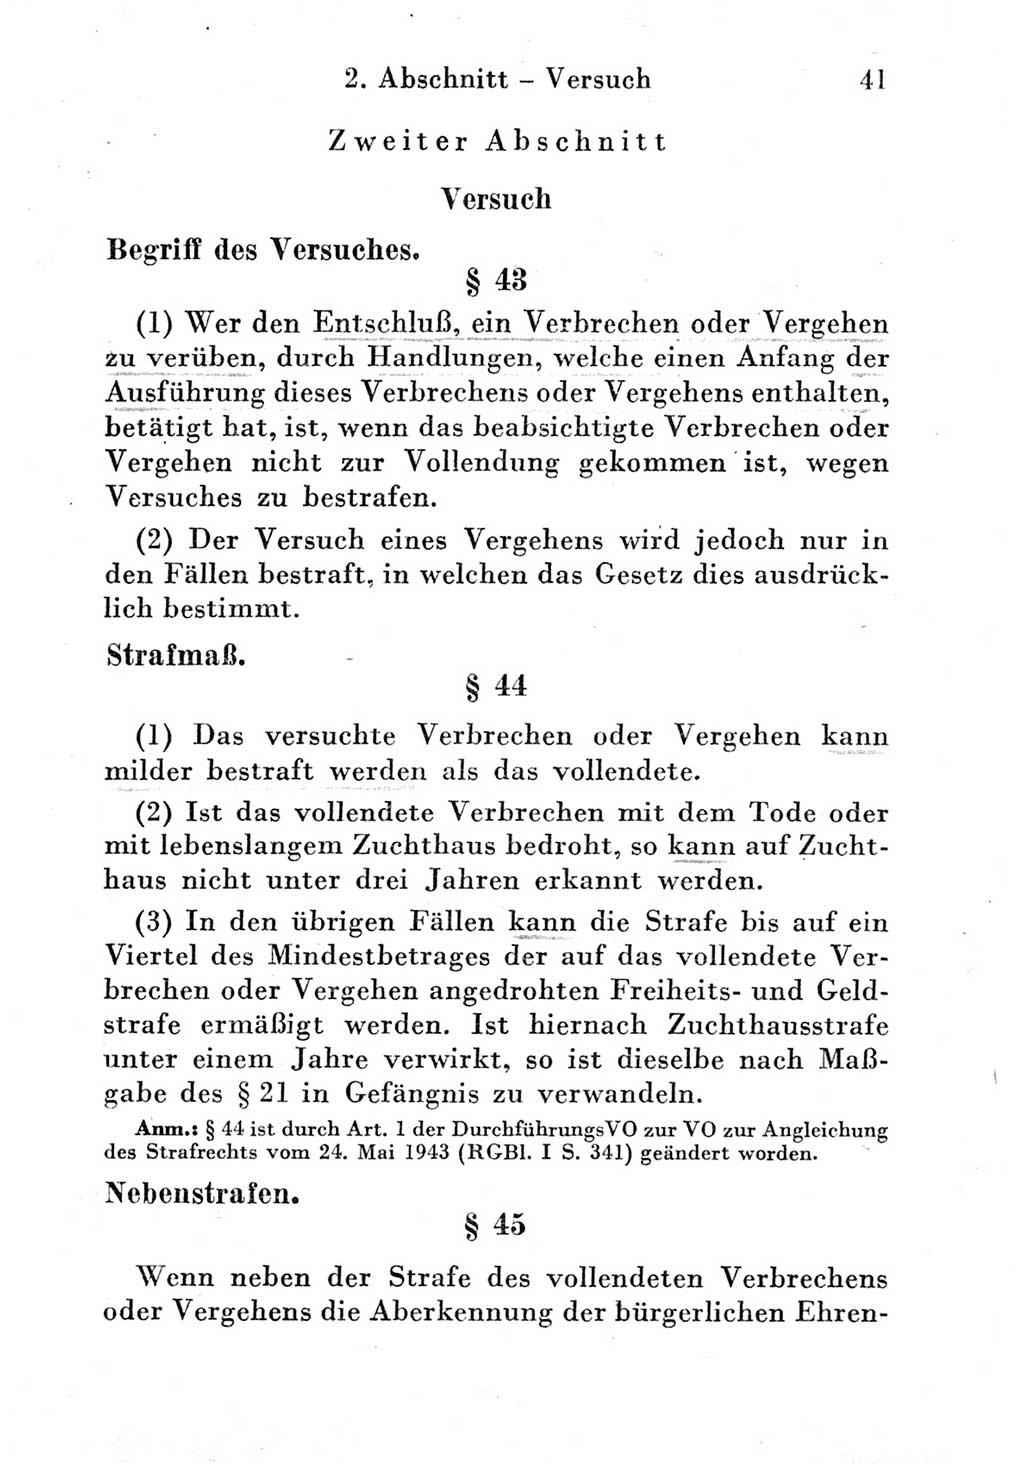 Strafgesetzbuch (StGB) und andere Strafgesetze [Deutsche Demokratische Republik (DDR)] 1951, Seite 41 (StGB Strafges. DDR 1951, S. 41)